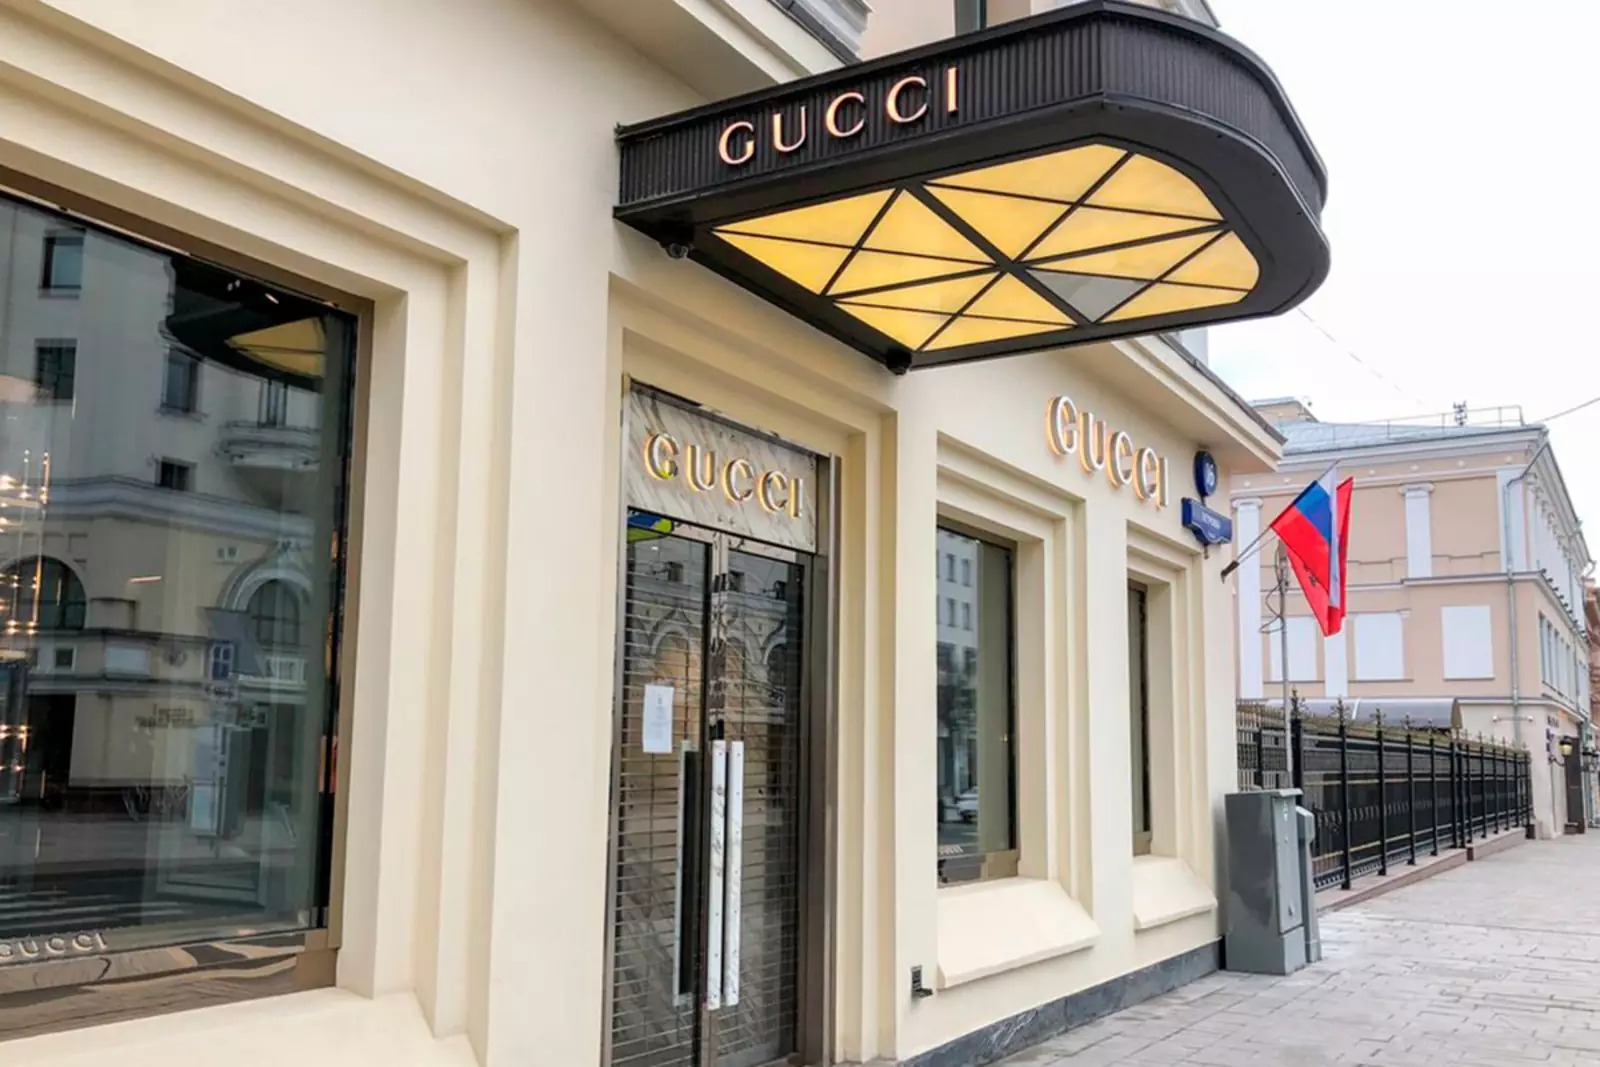  Временно закрытый магазин бренда Gucci на ул. Петровка в центре Москвы.